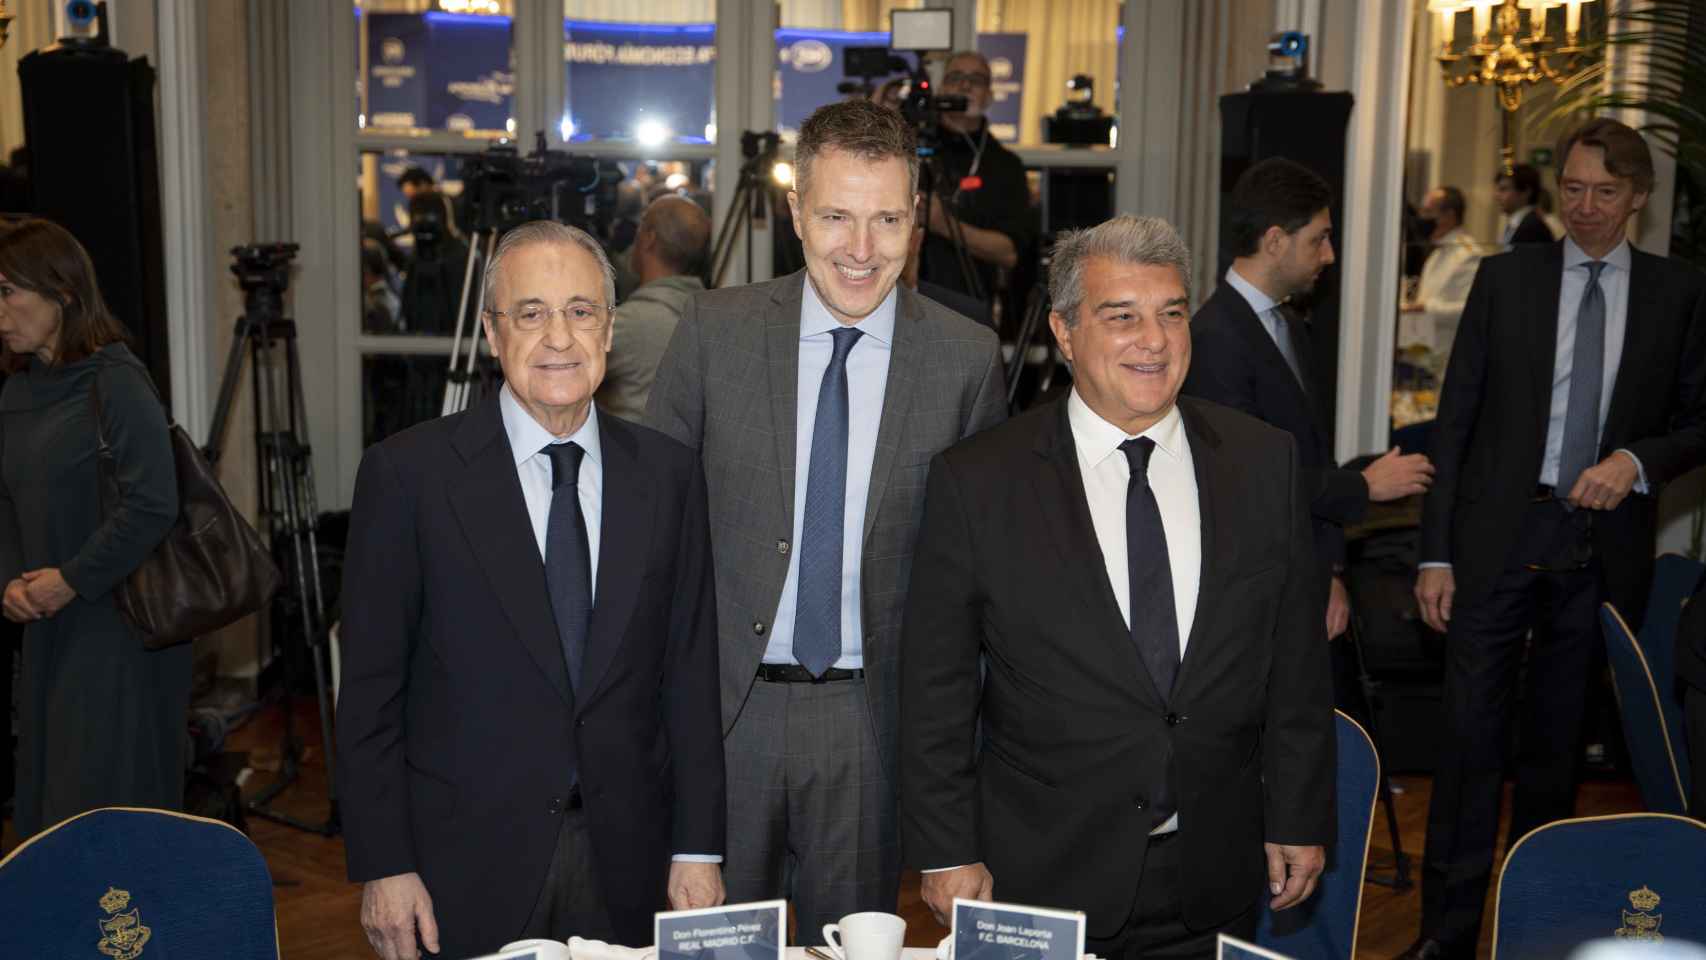 Florentino Pérez, presidente del Real Madrid, Bernd Reichart, CEO de A22 Sports Management, y Joan Laporta, presidente del FC Barcelona, en el acto organizado por Nueva Economía Fórum sobre la Superliga europea de fútbol